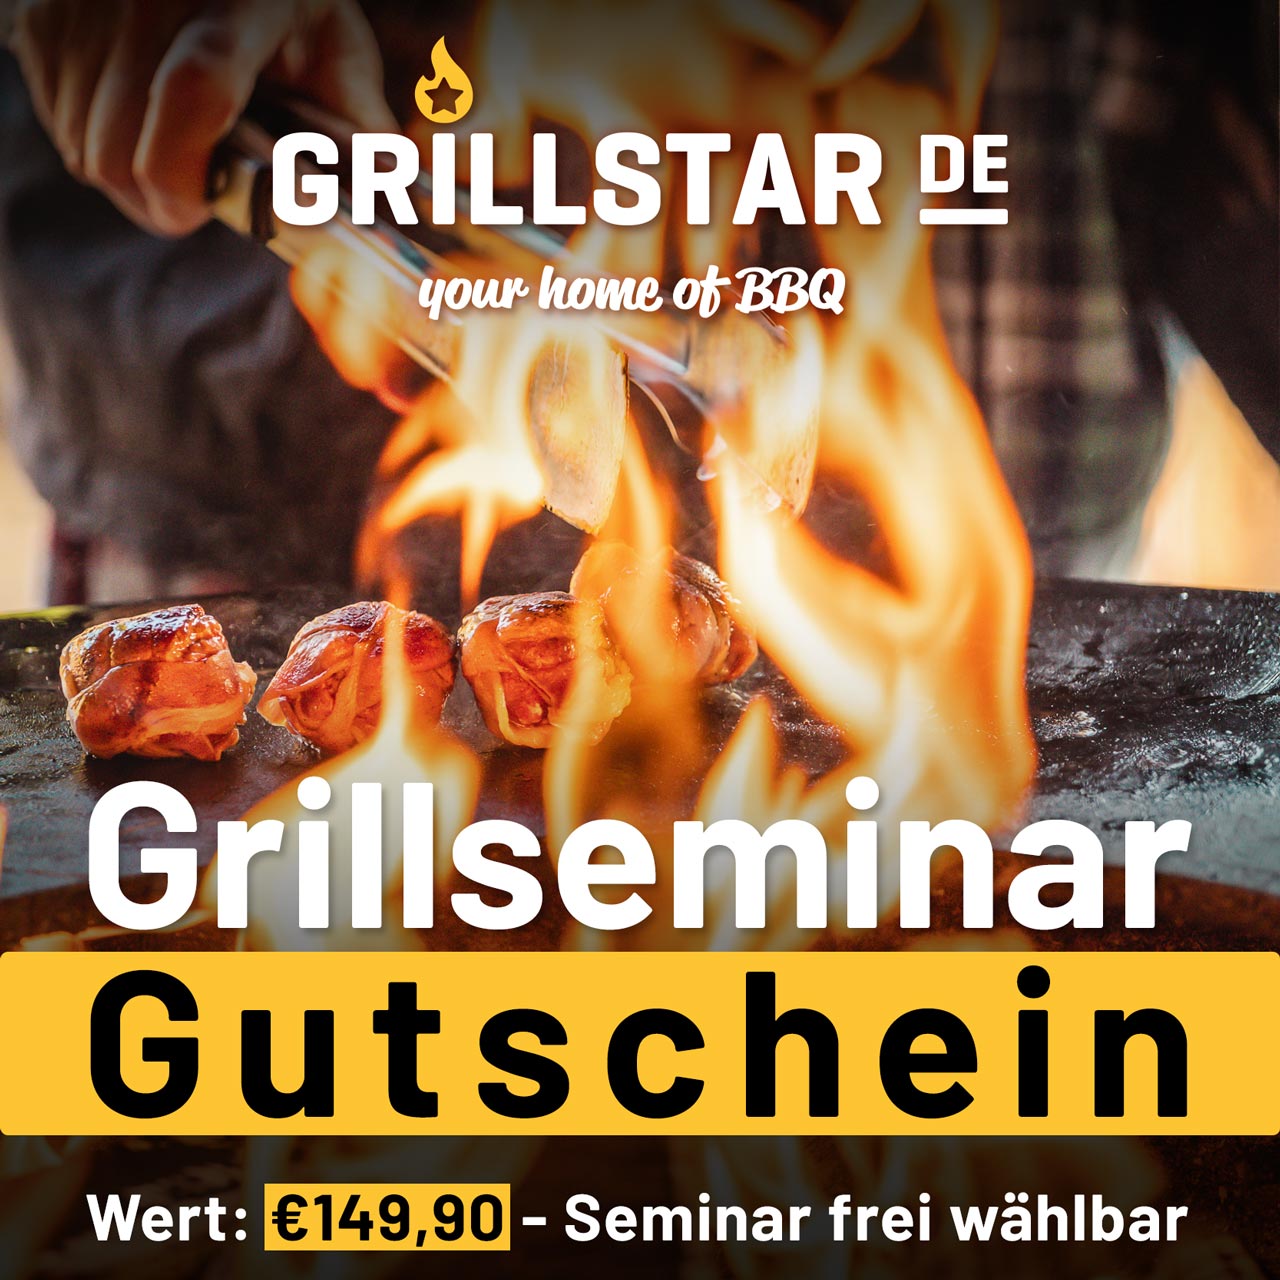 Grillseminar - Gutschein €149,90